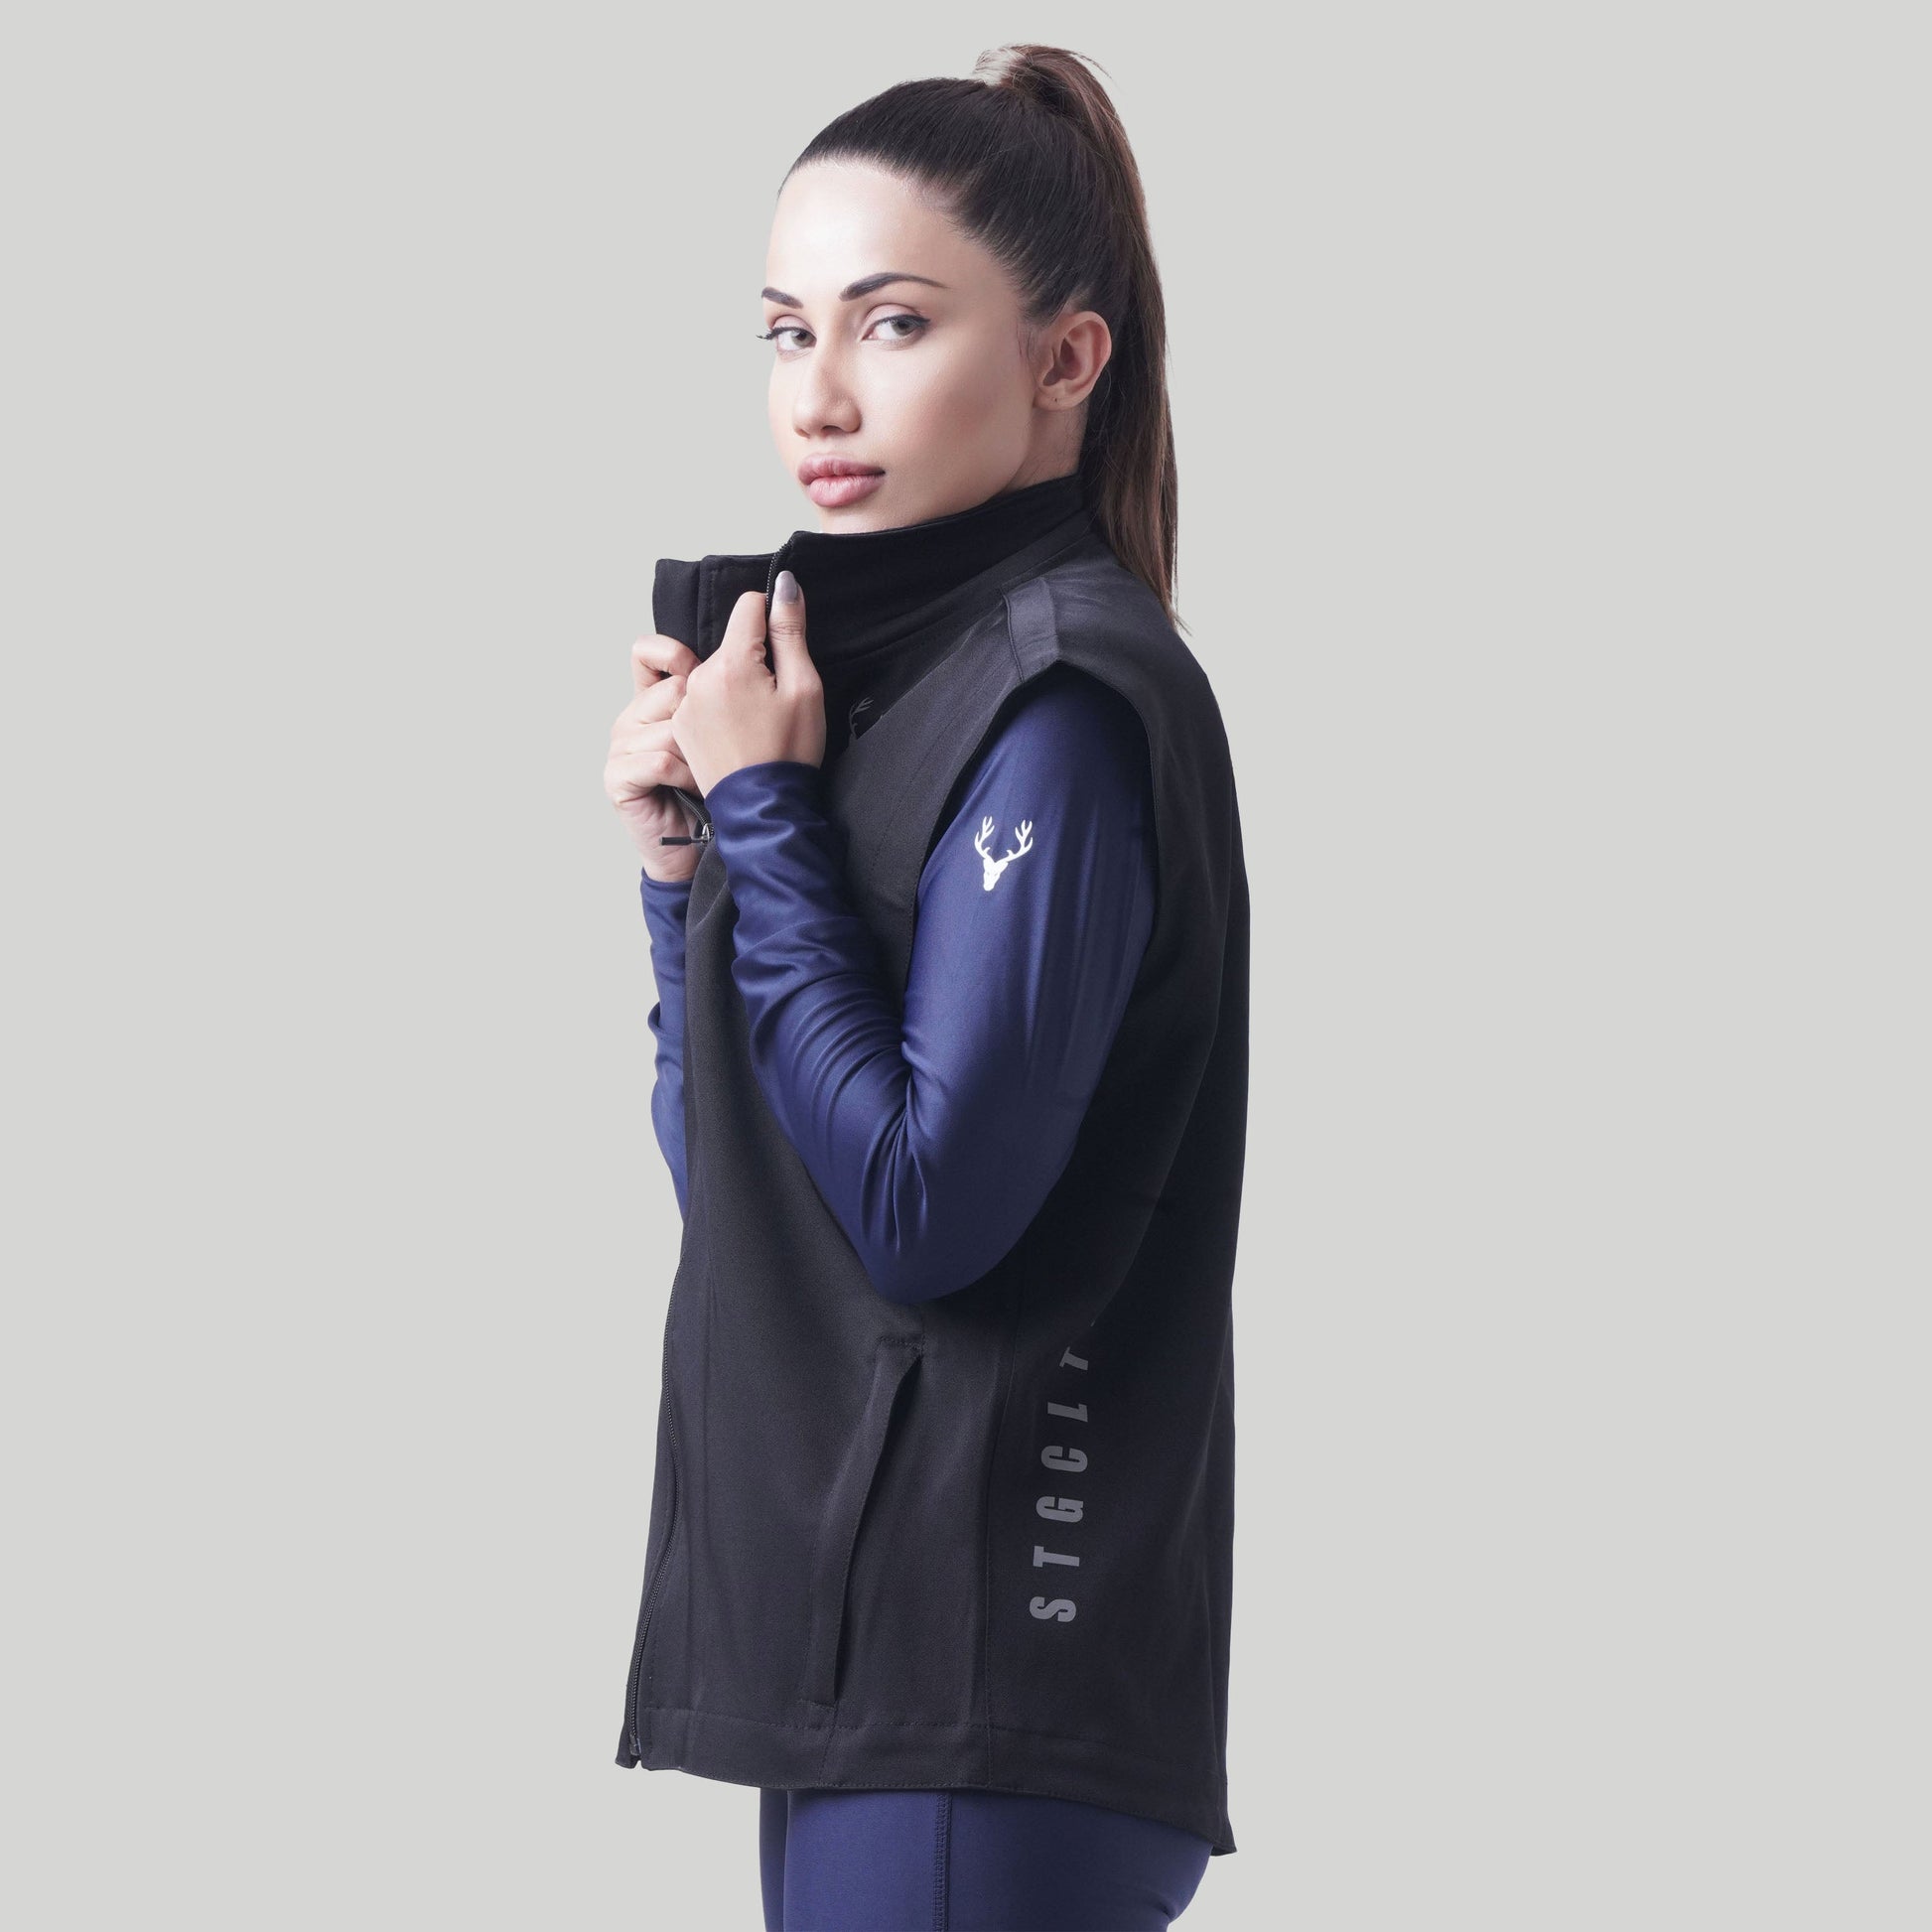 Stag Unisex Sports Sleeveless Jacket (Black) - Stag Clothing